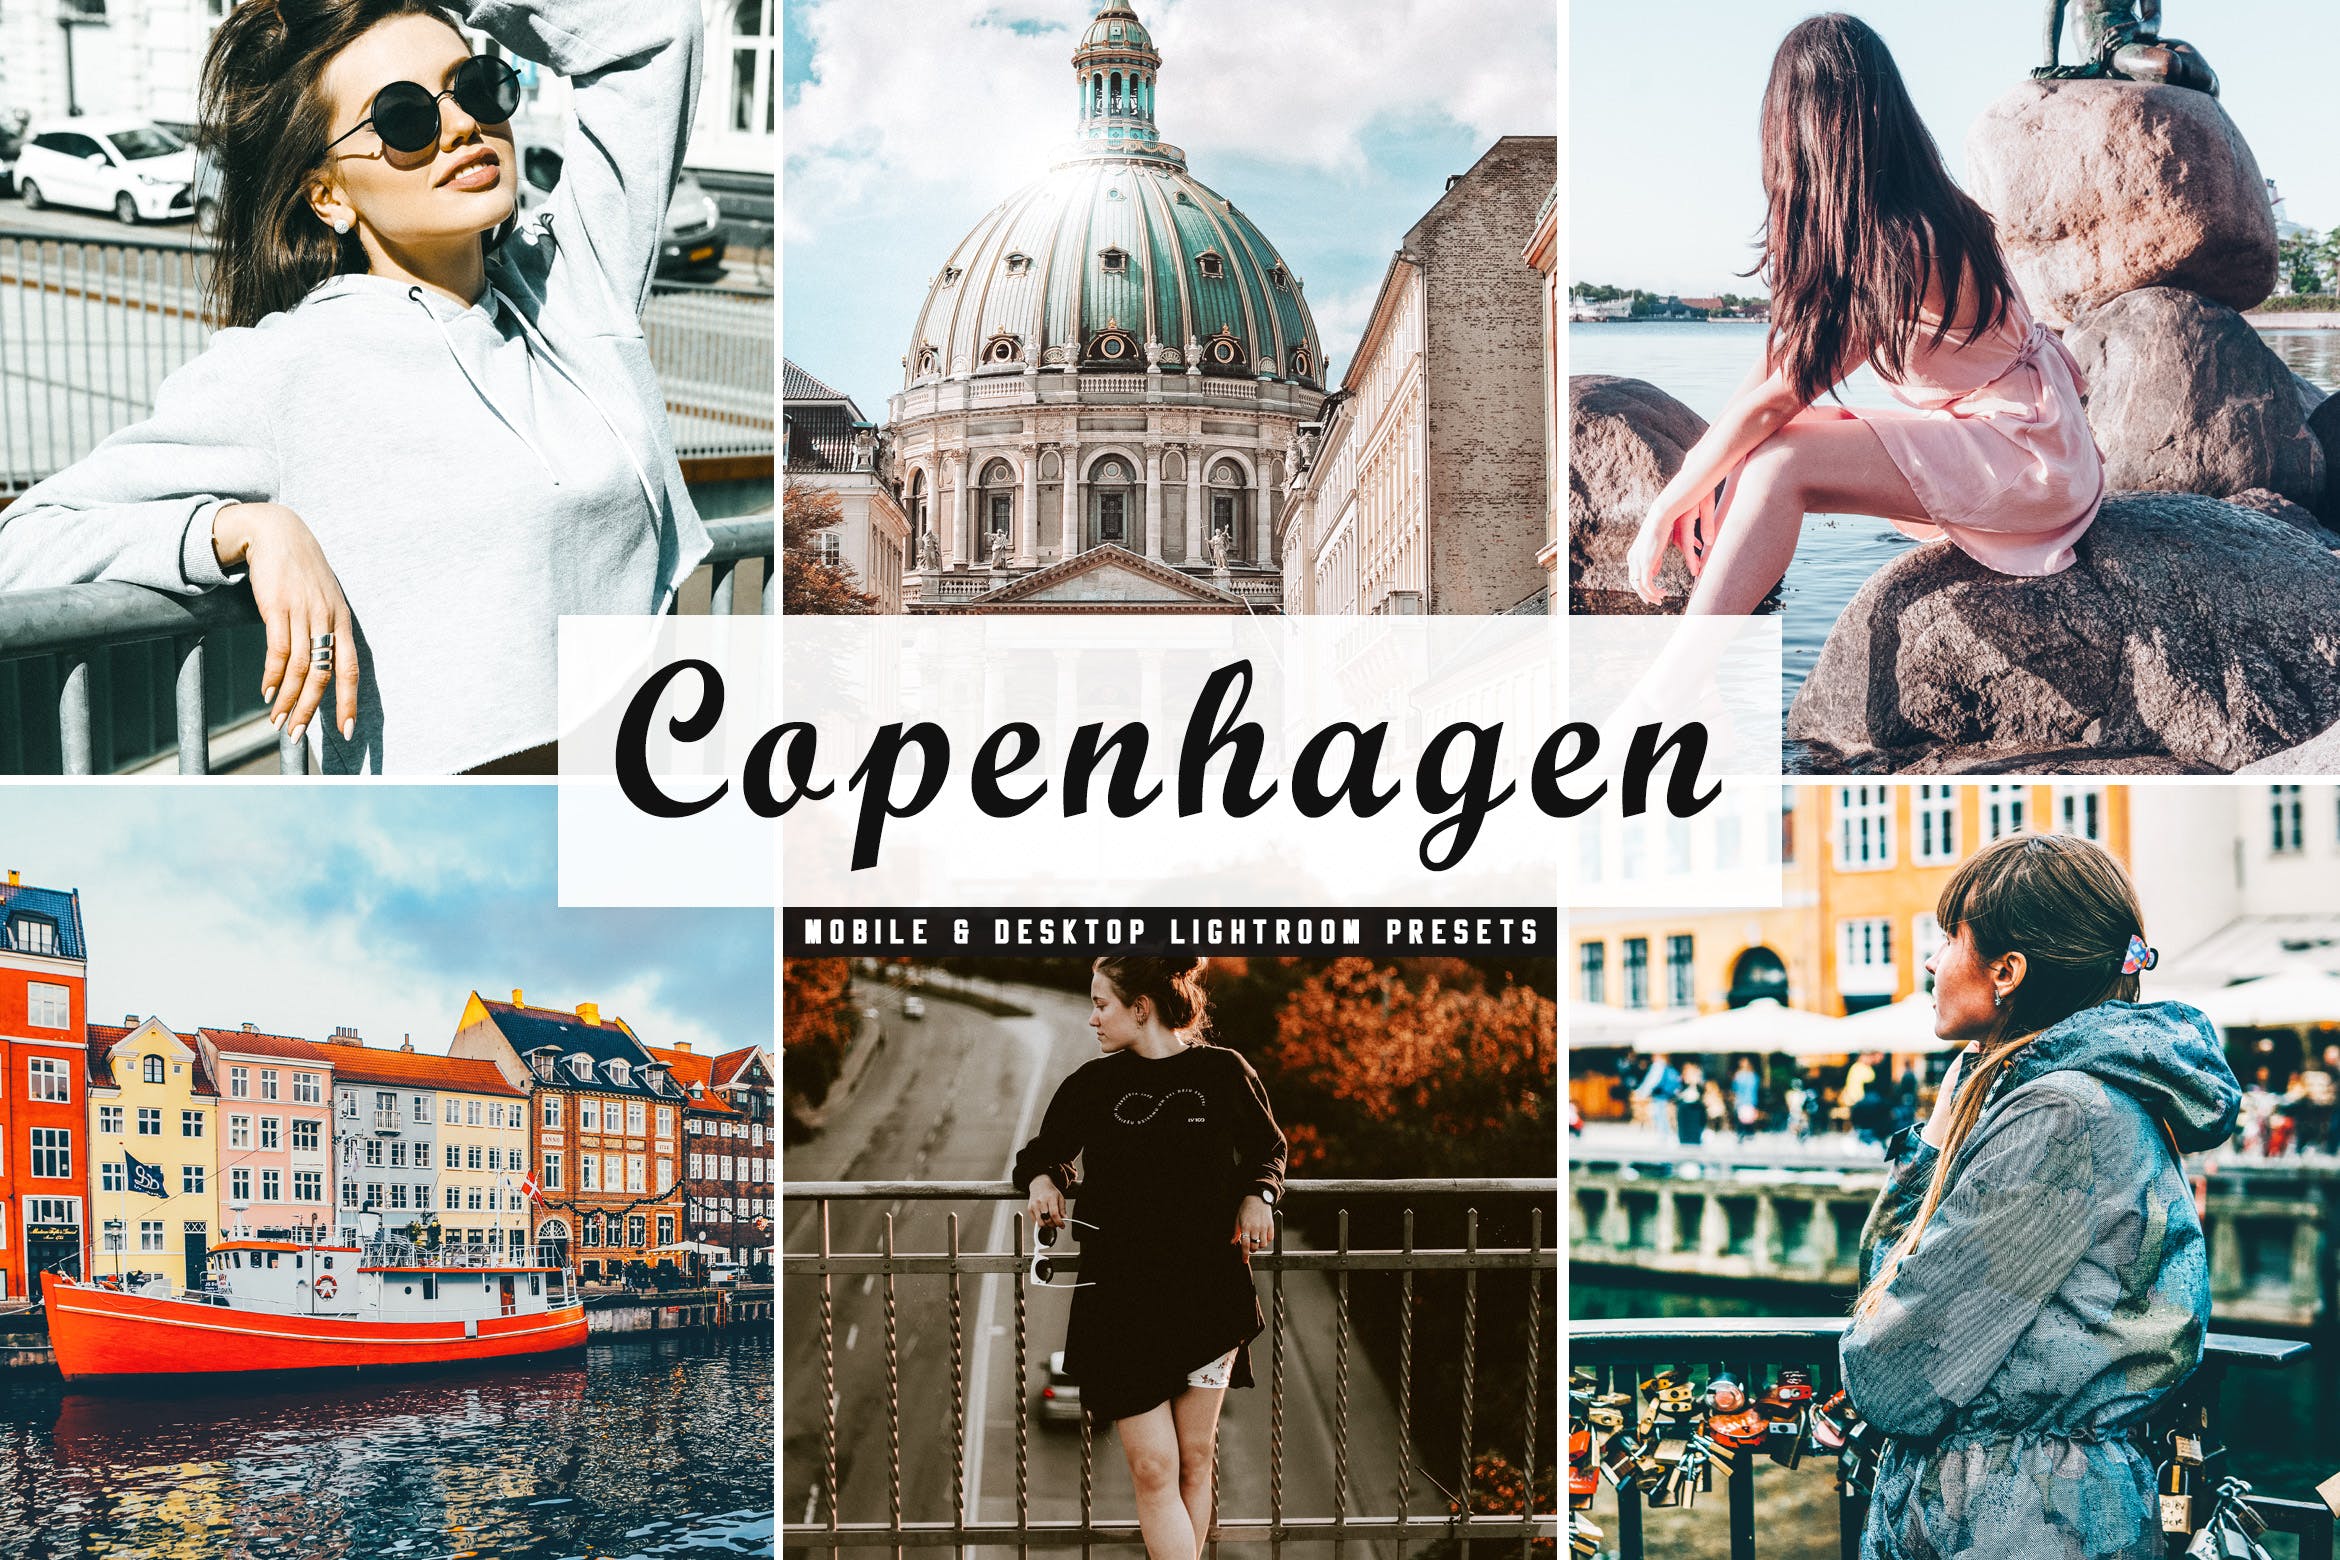 人物风景摄影亮色暖色调处理非凡图库精选LR预设下载 Copenhagen Mobile & Desktop Lightroom Presets插图